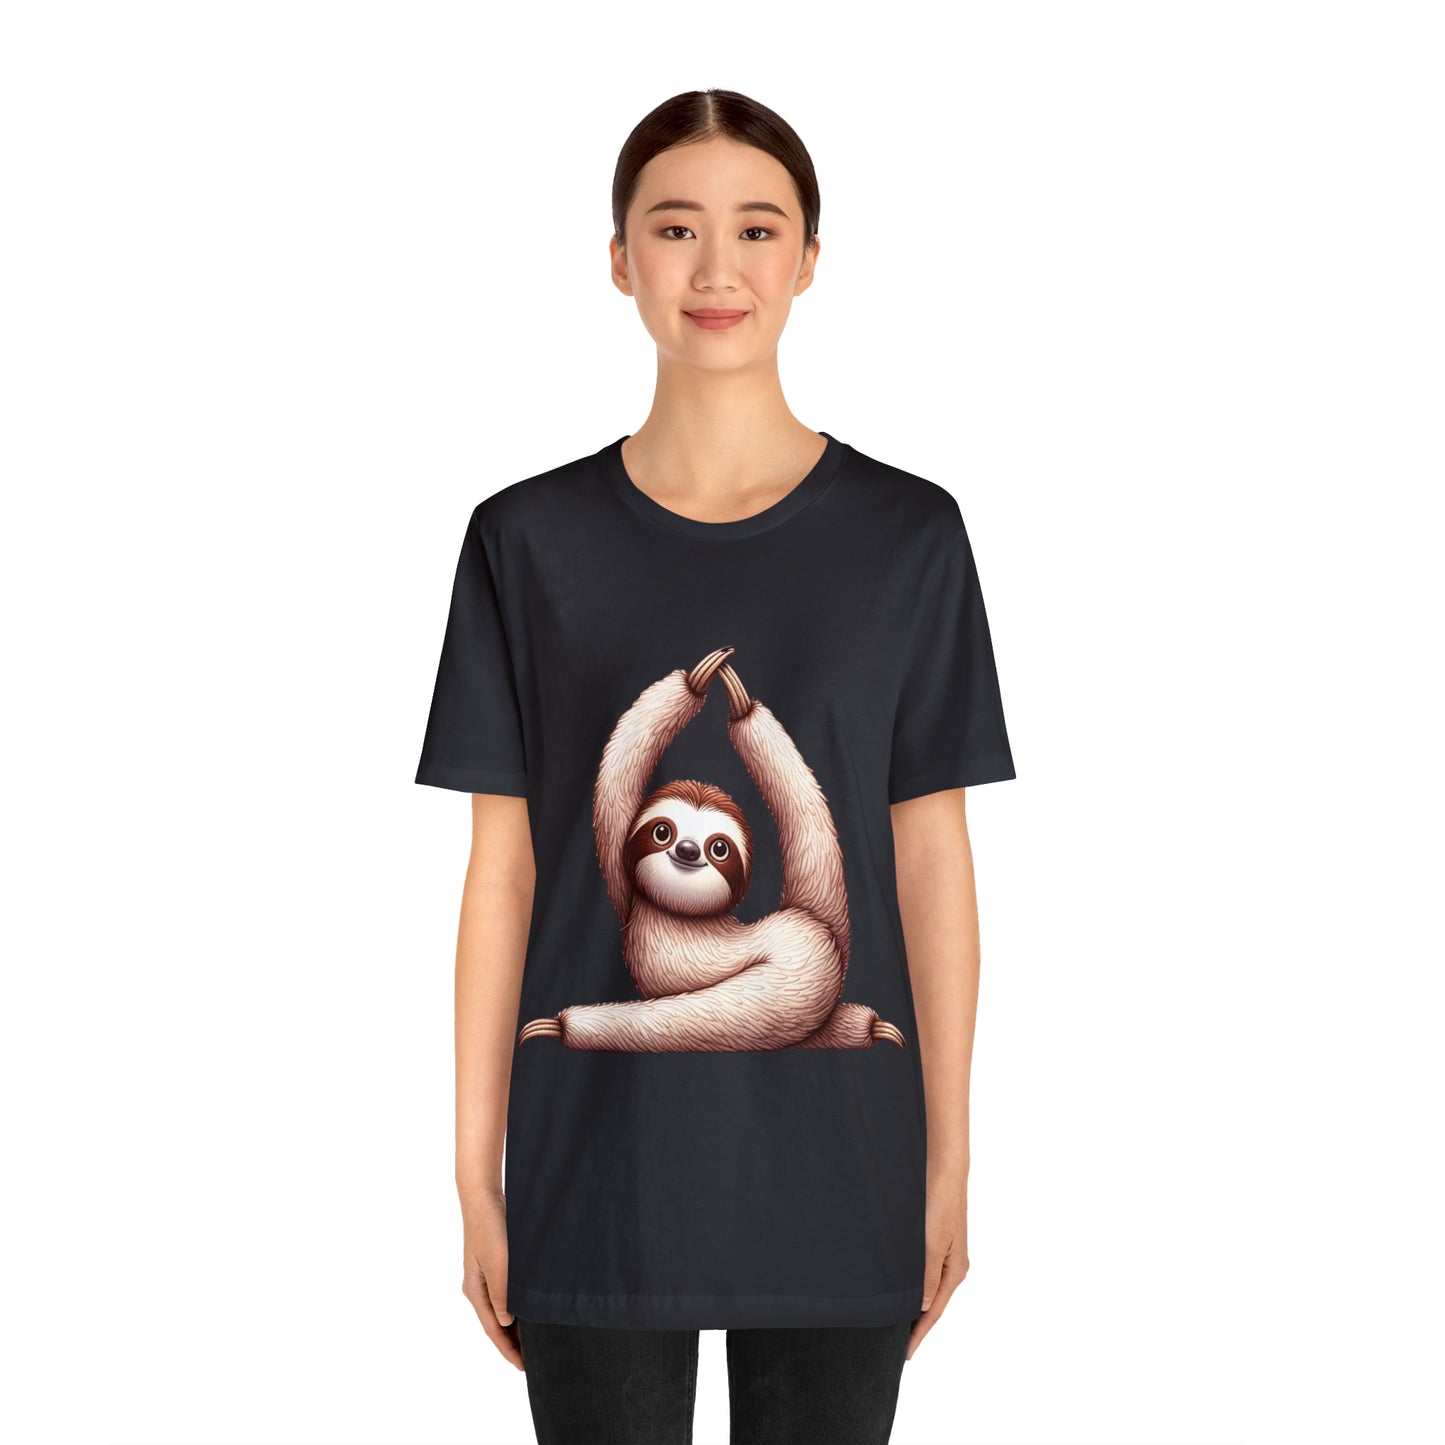 Sloth Yoga T-Shirt, Yoga Lover, Funny Yoga, Sloth T-Shirt, Cute Sloth Shirt